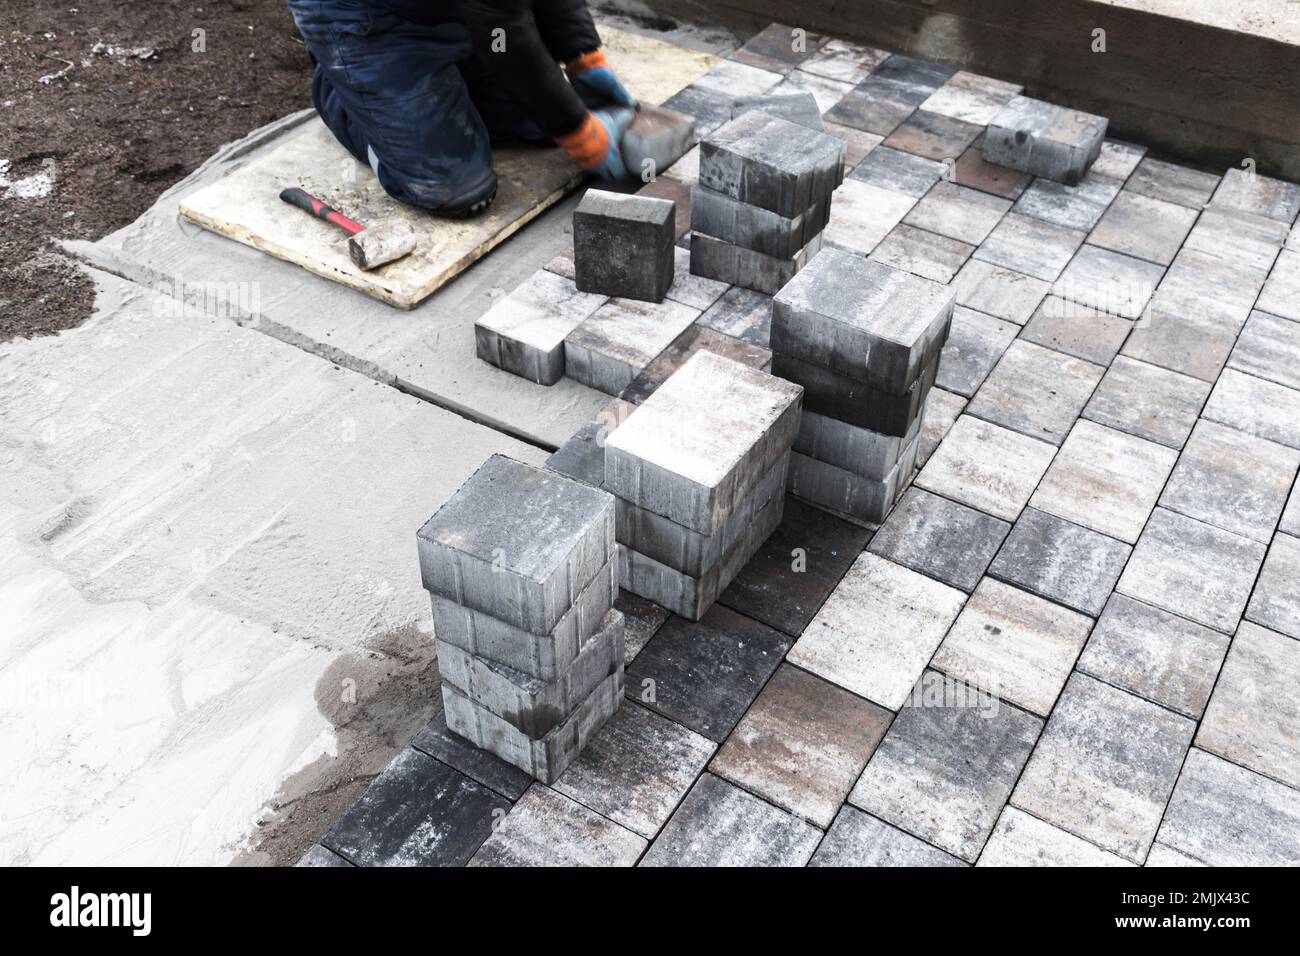 Lavoratore che posa lastre di pavimentazione grigie su base di cemento. Lavori di pavimentazione stradale in corso. Foto di sfondo con messa a fuoco selettiva Foto Stock